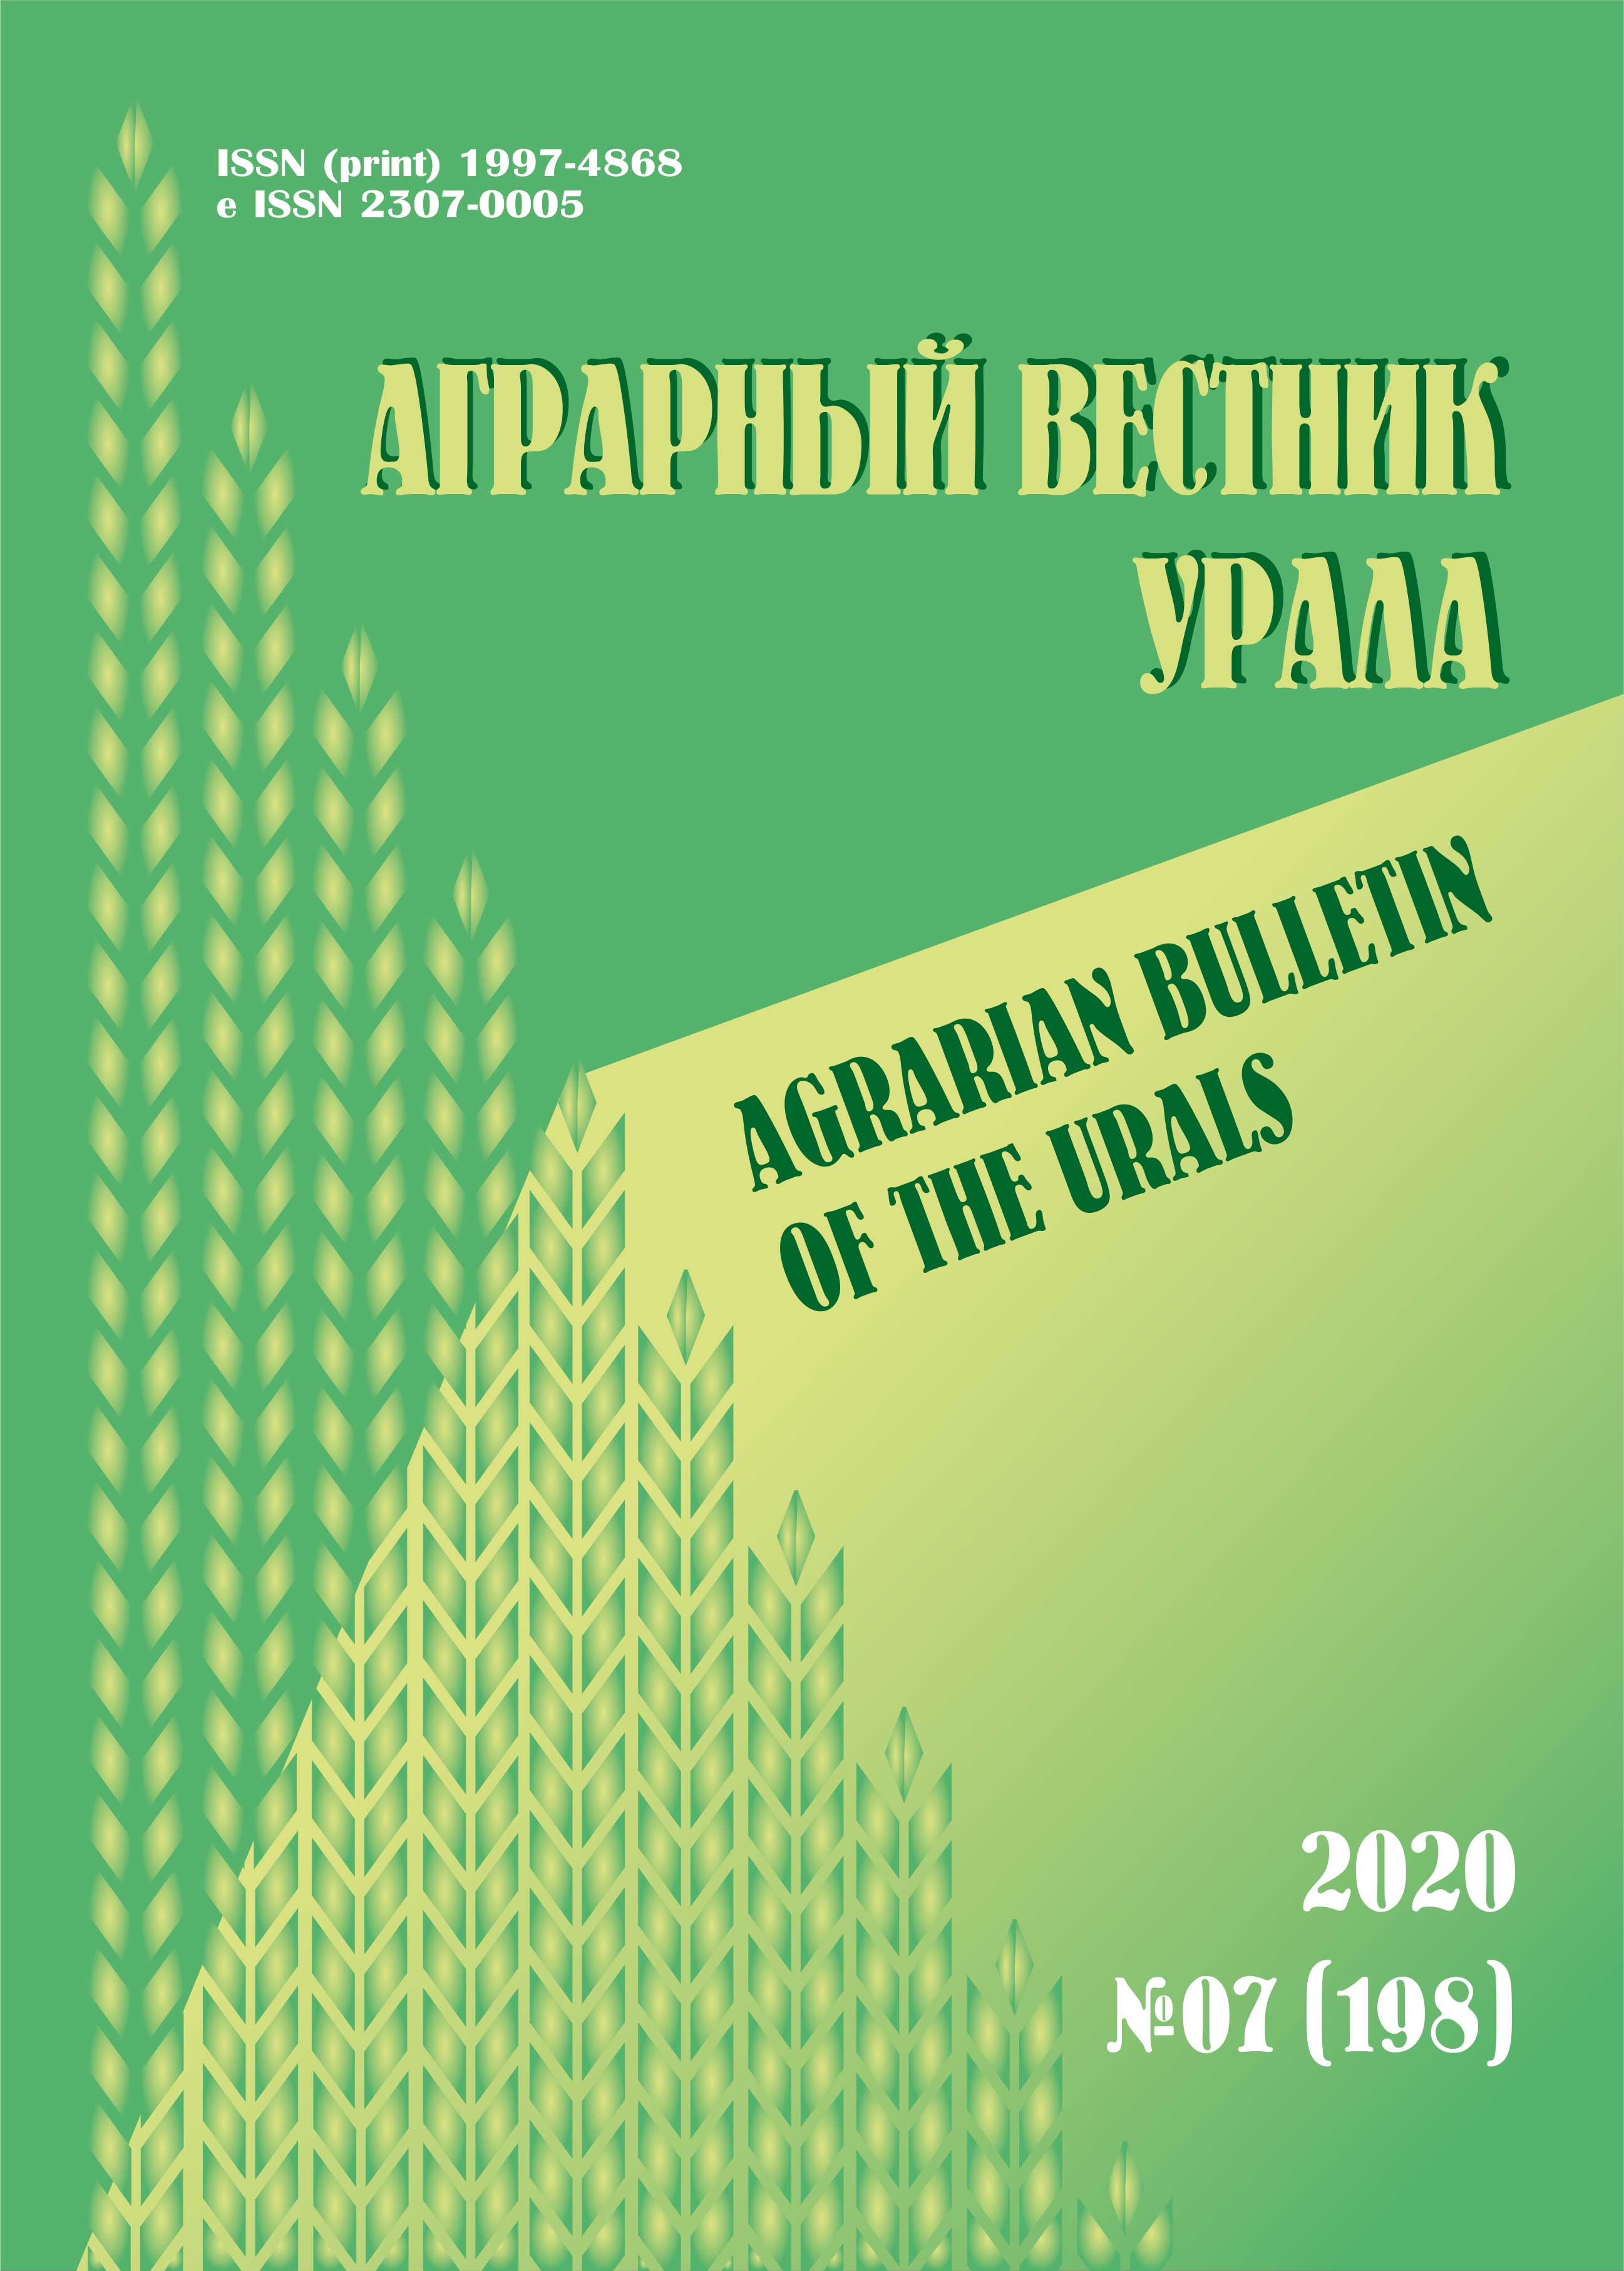             Продуктивность лофанта тибетского (Agastache rugosa) в зависимости от агротехнических приемов возделывания в условиях интродукции на Среднем Урале
    